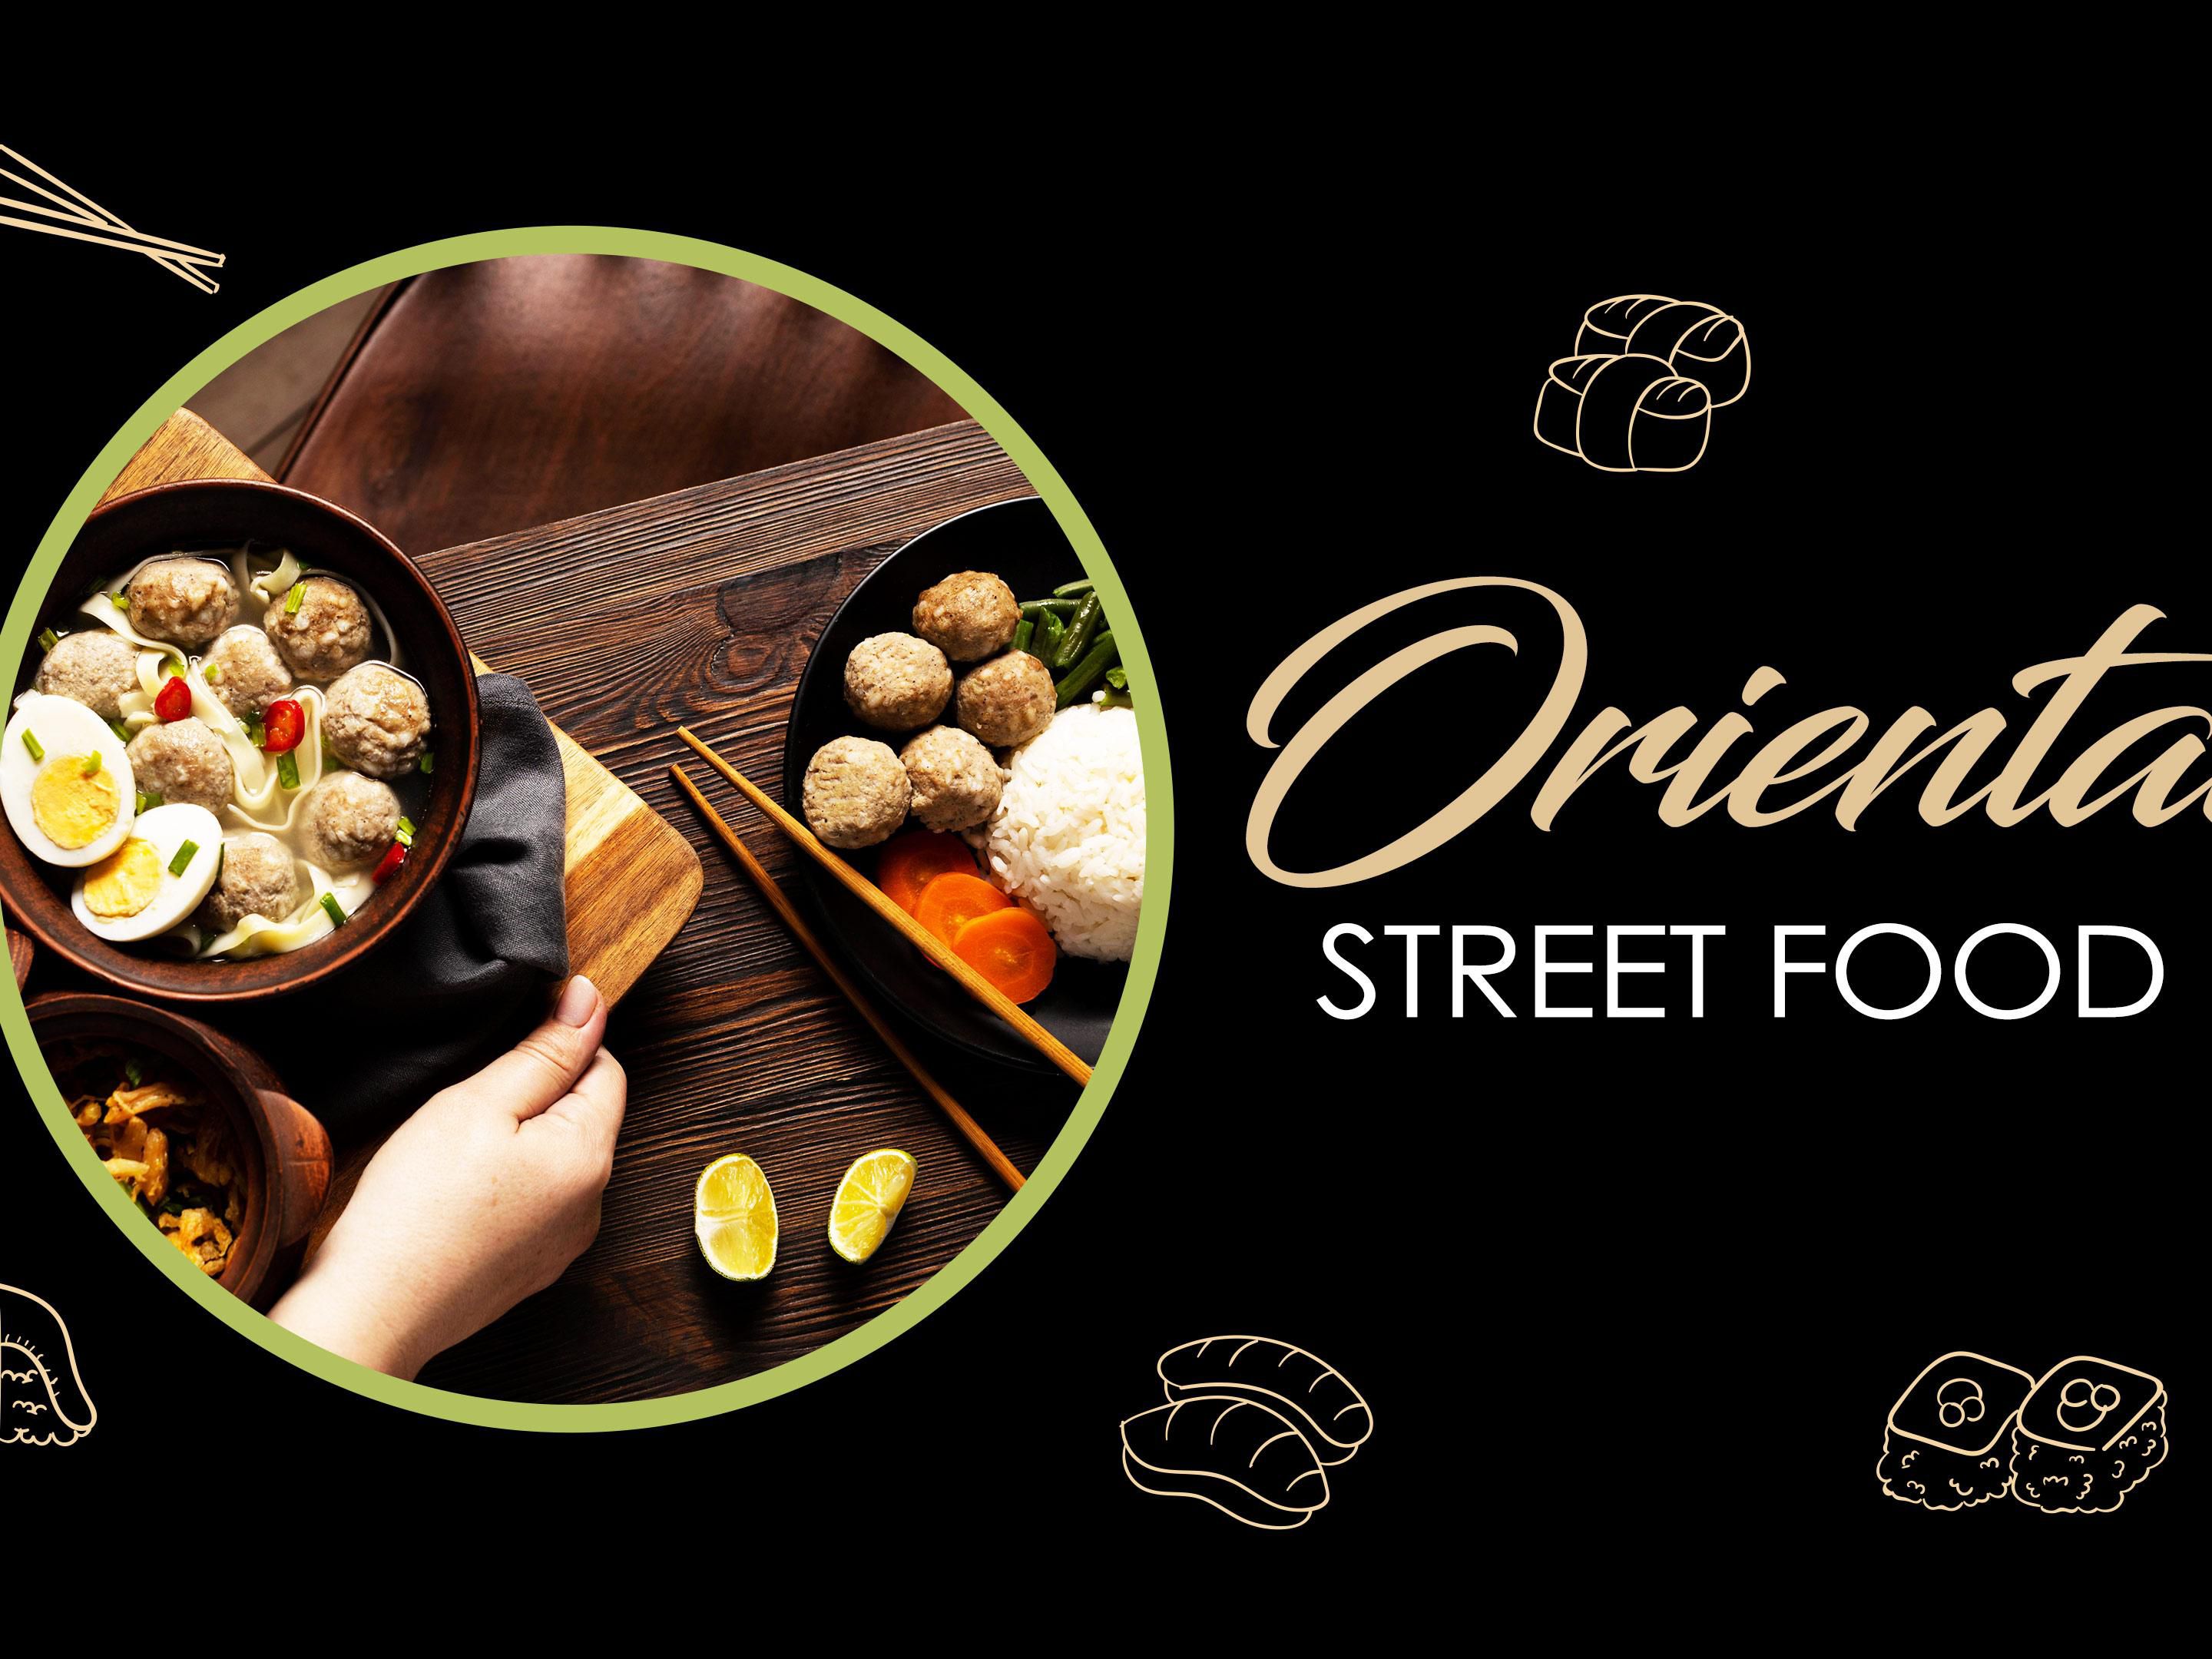 Oriental Street Food Festival